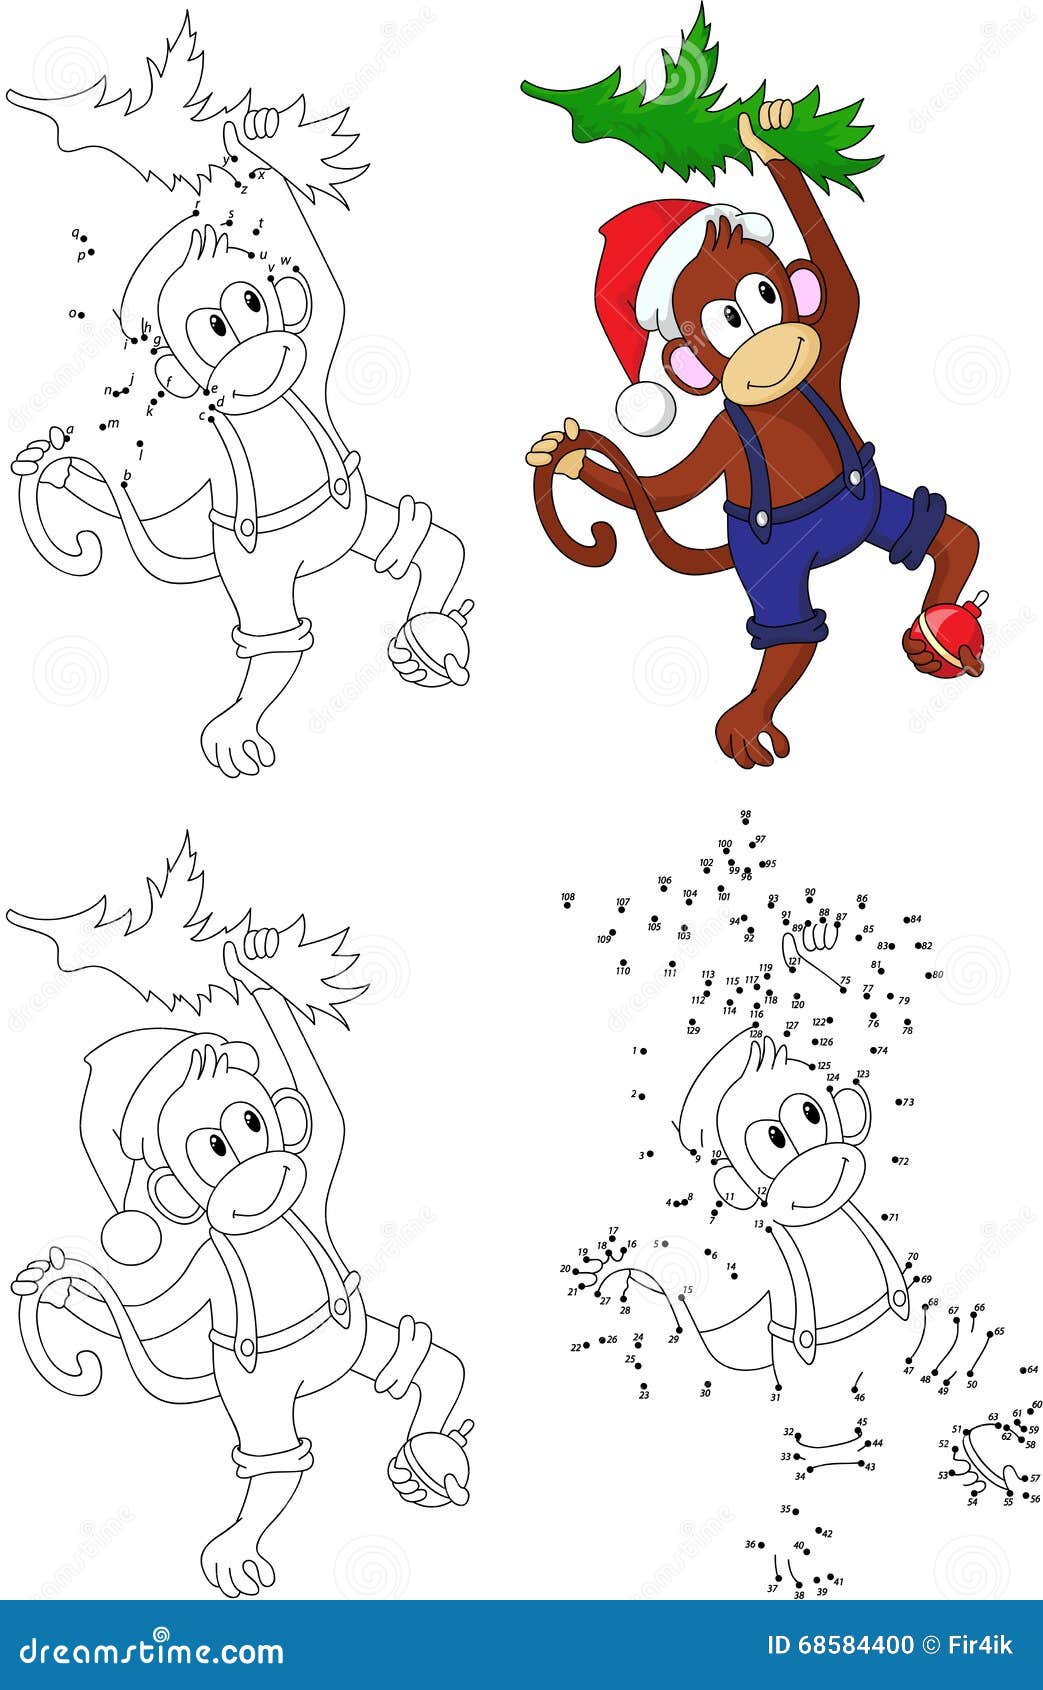 Desenho de macacos grátis para descarregar e colorir - Macacos